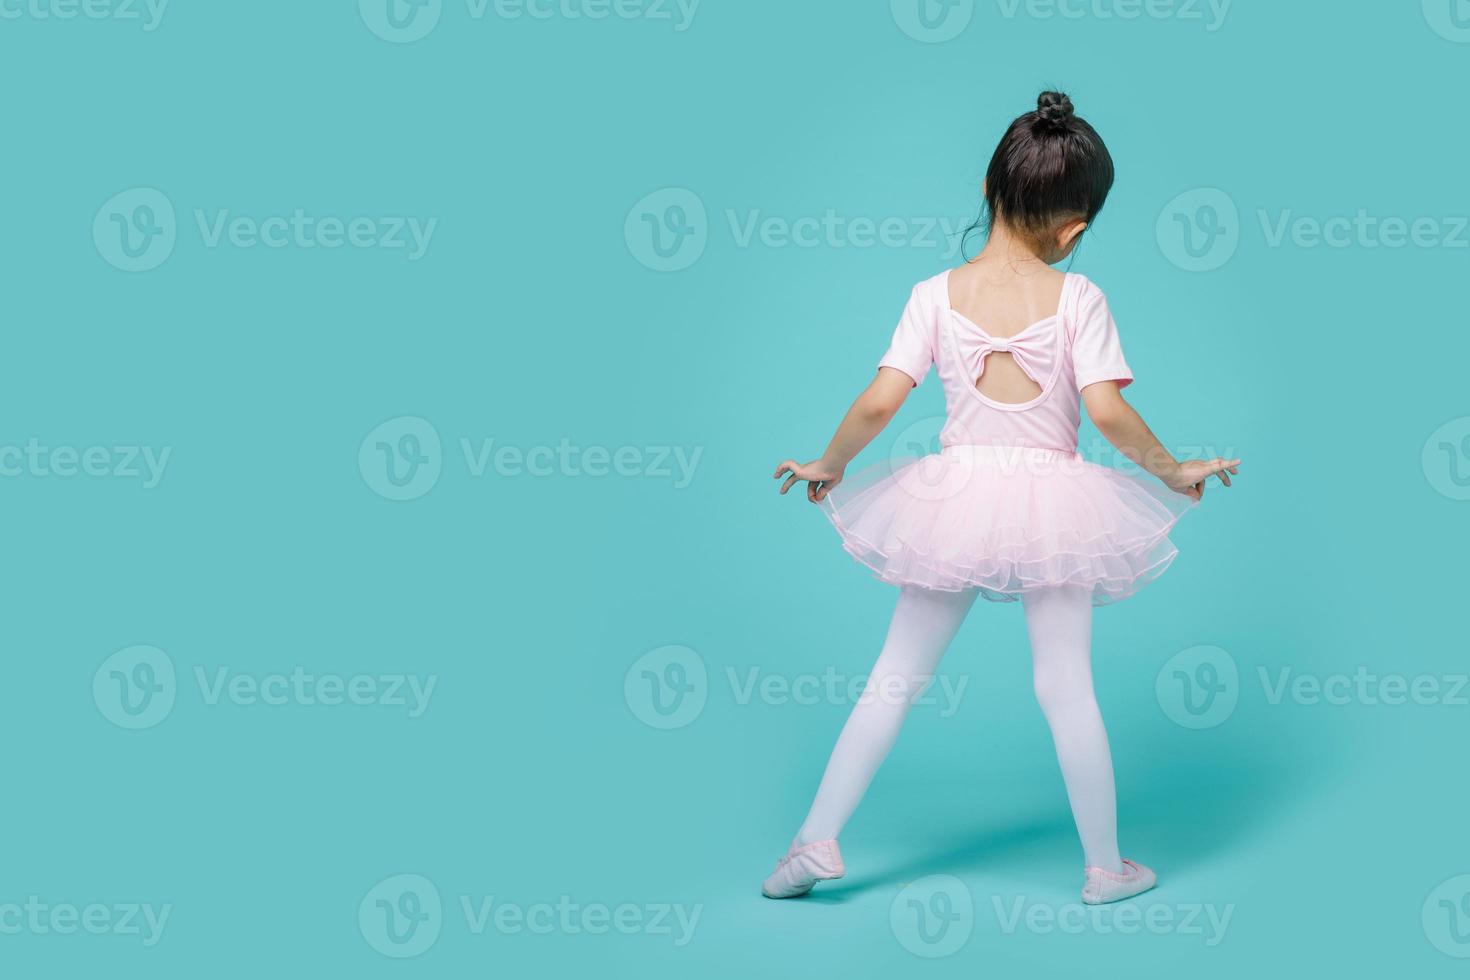 belle petite fille asiatique souriante dans un costume rose danse un ballet à l'école, espace vide en studio tourné isolé sur fond bleu coloré photo